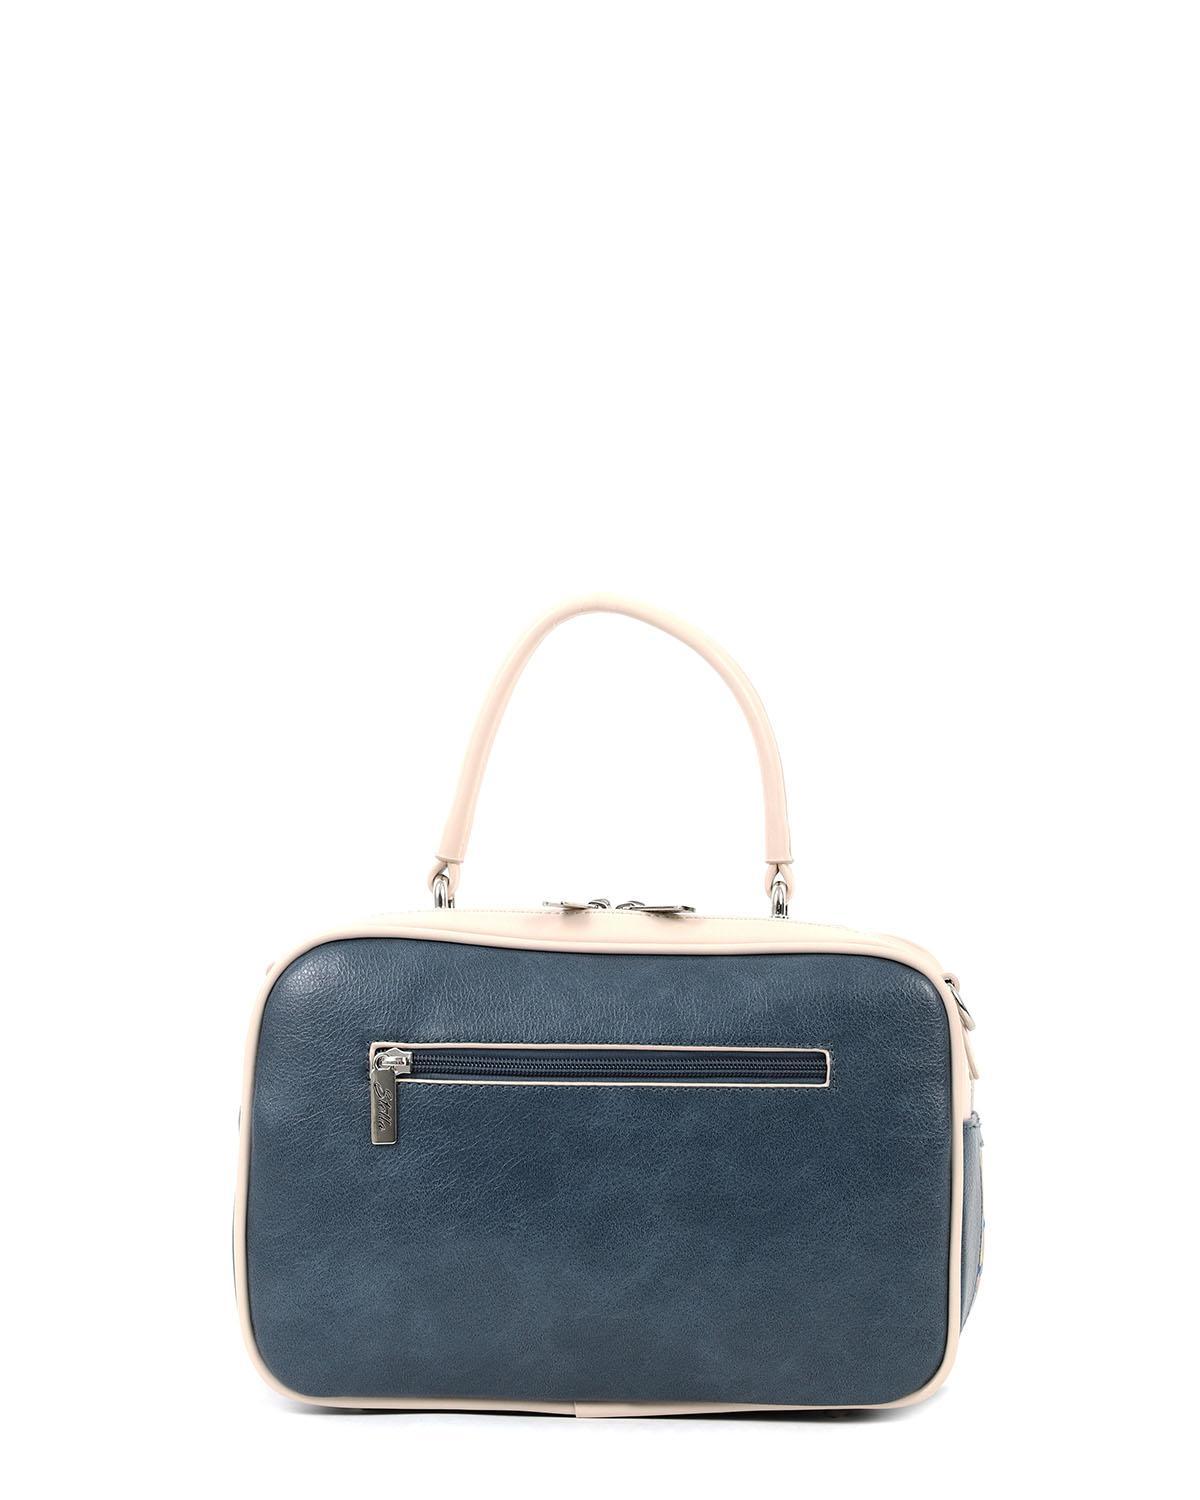 |17101| Καθημερινή τσάντα χειρός μπλε